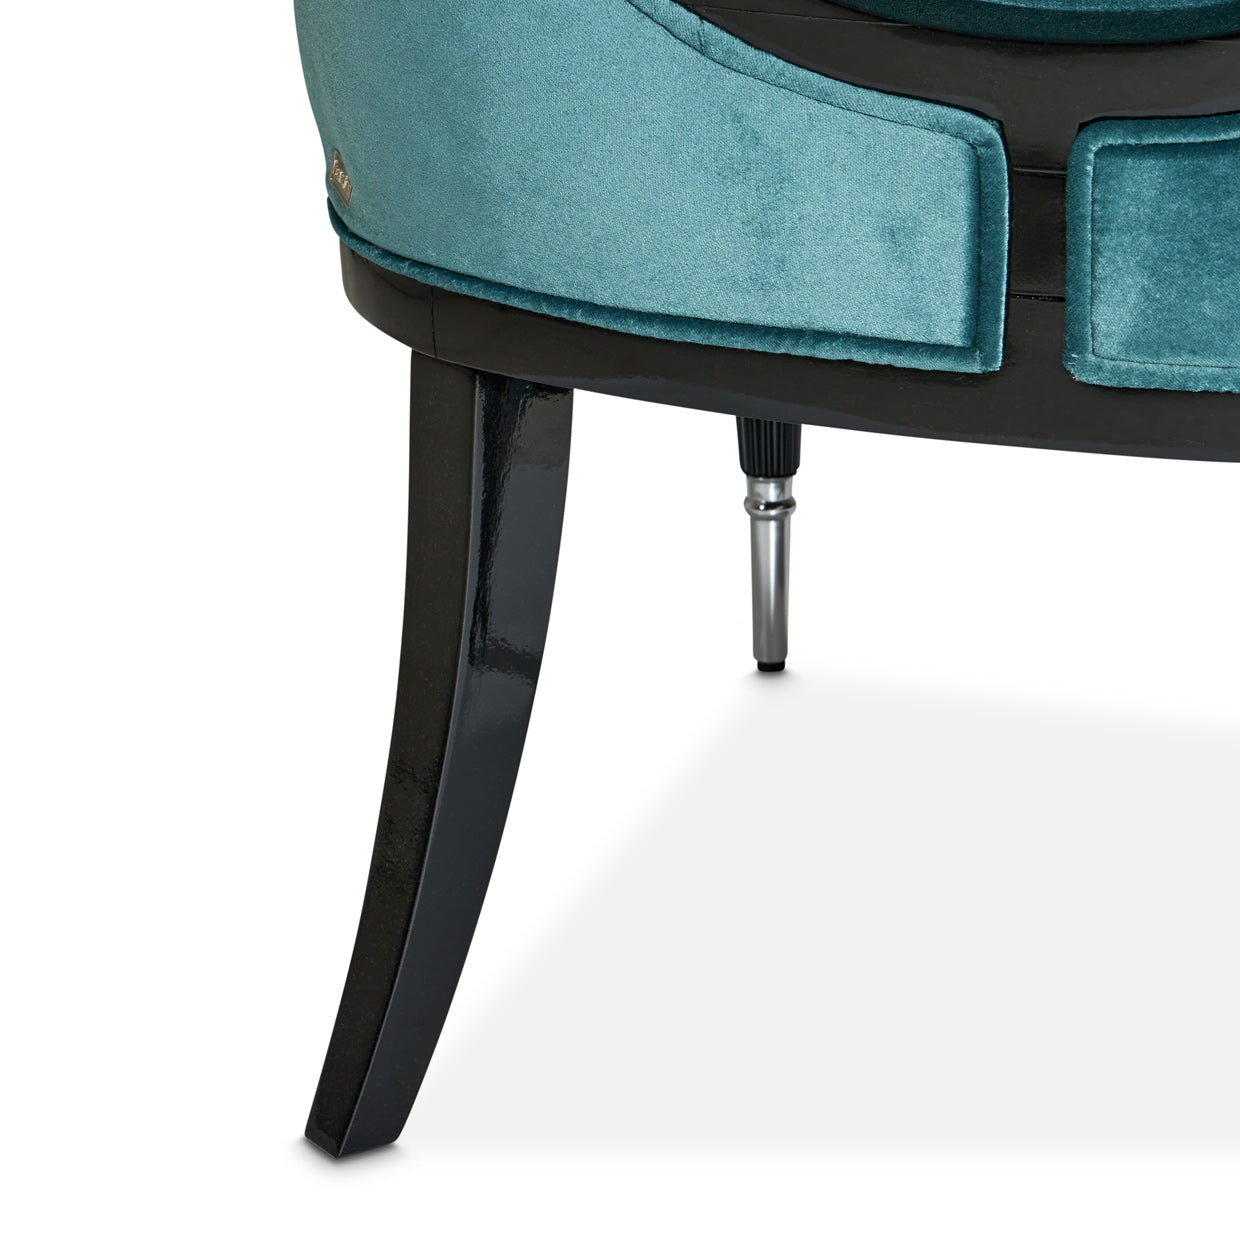 Accent Chair,Azure Black,  L'art de vivre, Sophistication, Exquisite piece, Home décor, Refinement, Elegance, Style, Interior design, Living space, dream art , Michael amini